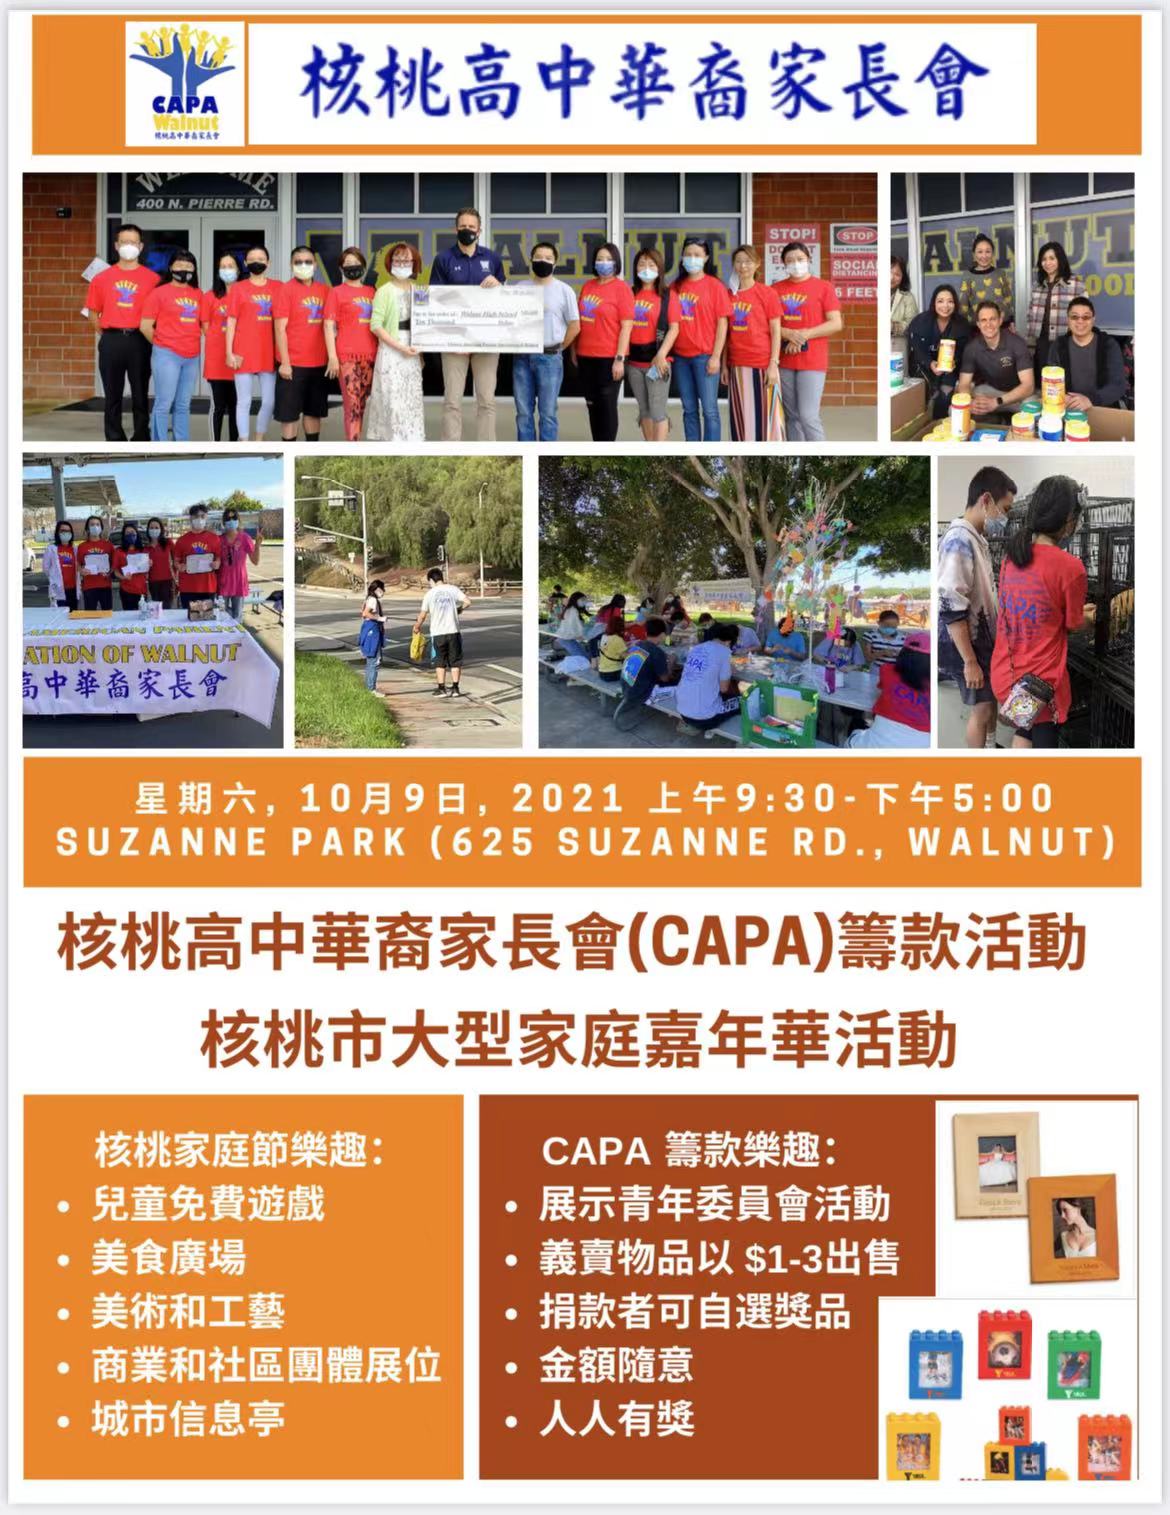 Walnut CAPA 欢迎大家参加一年一度的核桃市家庭嘉年华活动- Chinese